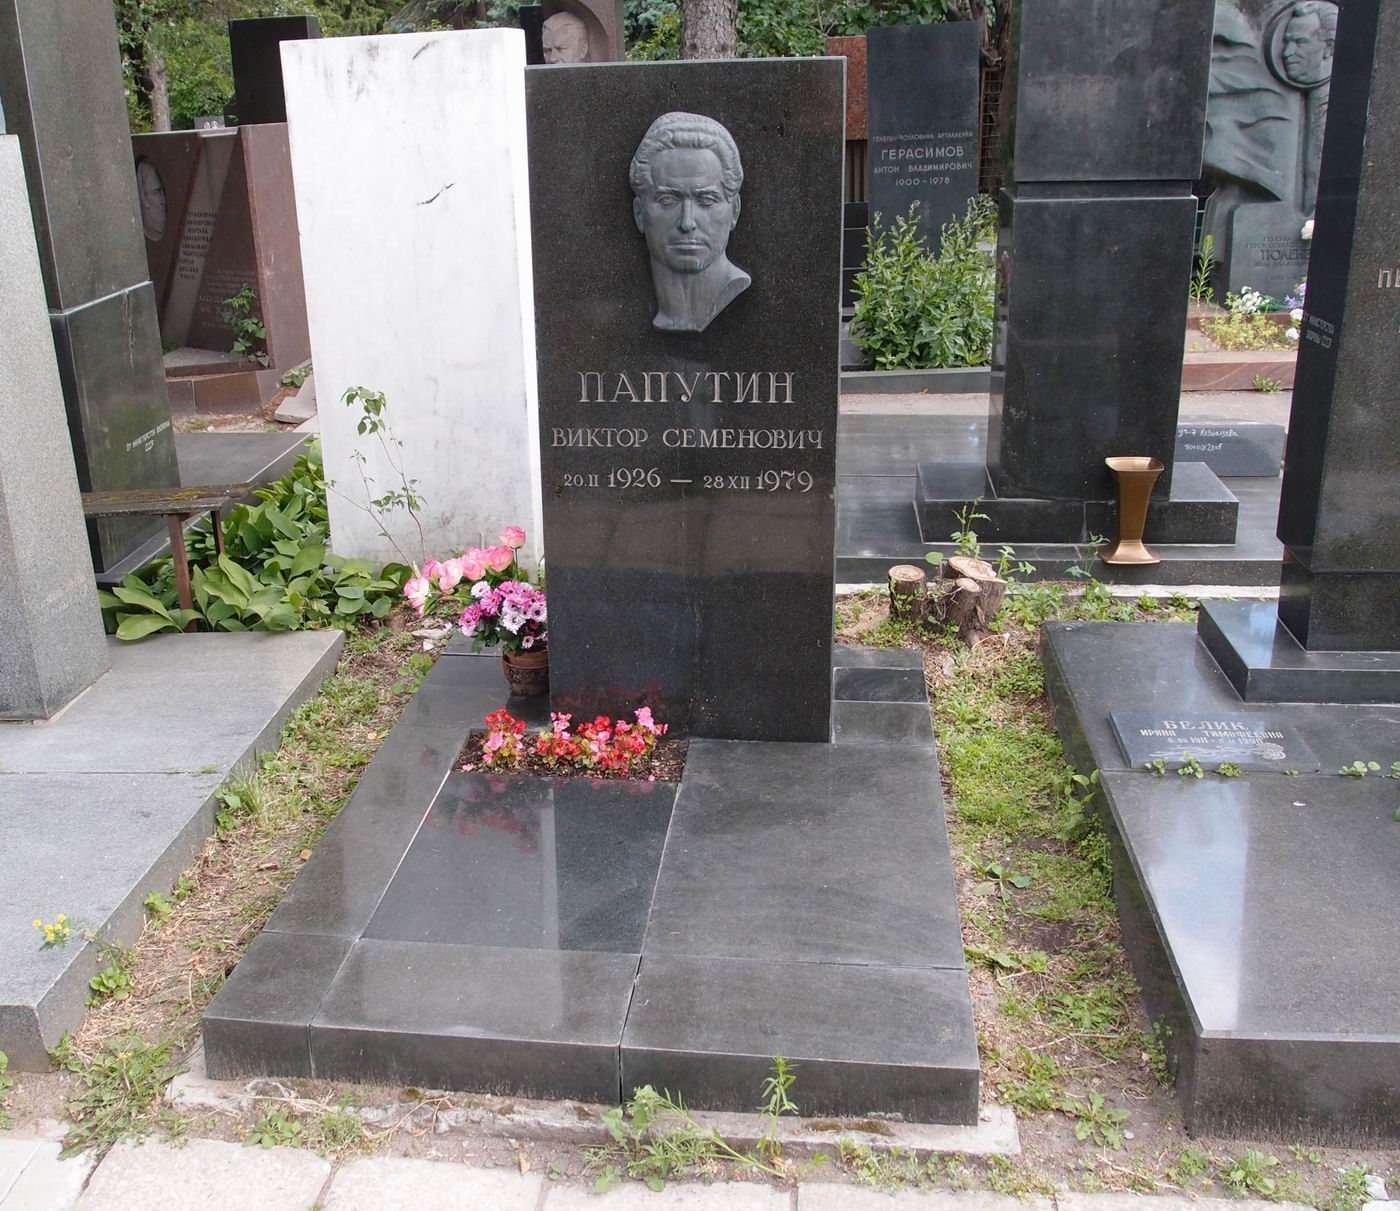 Памятник на могиле Папутина В.С. (1926-1979), ск. А.Бичуков, арх. А.Дугов, А.Любимов, Г.Петренко, на Новодевичьем кладбище (7-16-16).